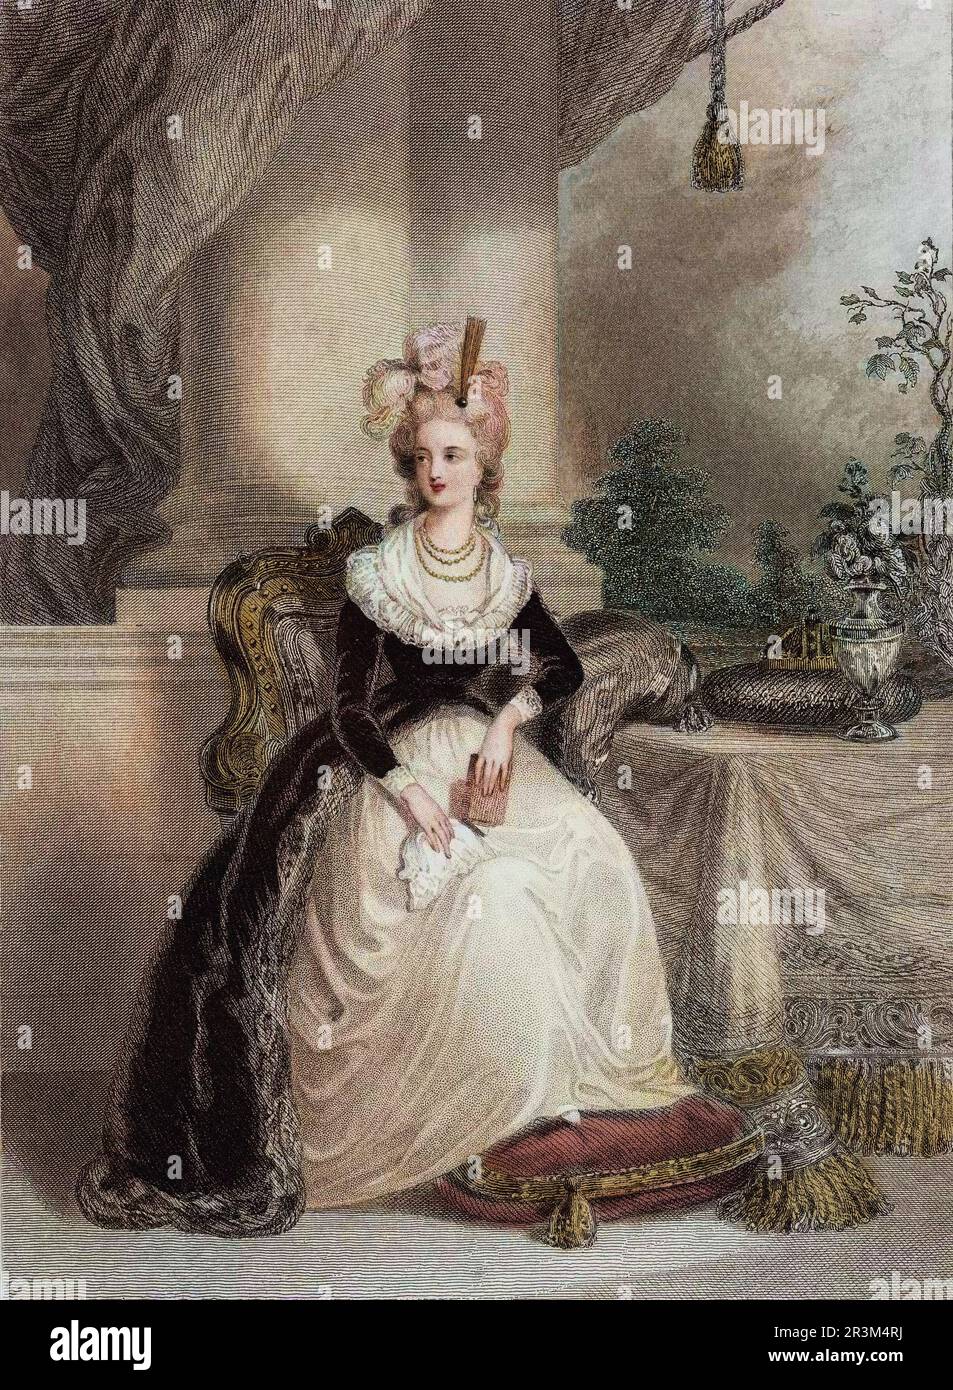 Portrait de Marie Antoinette (1755-1793), reine de France. Stock Photo